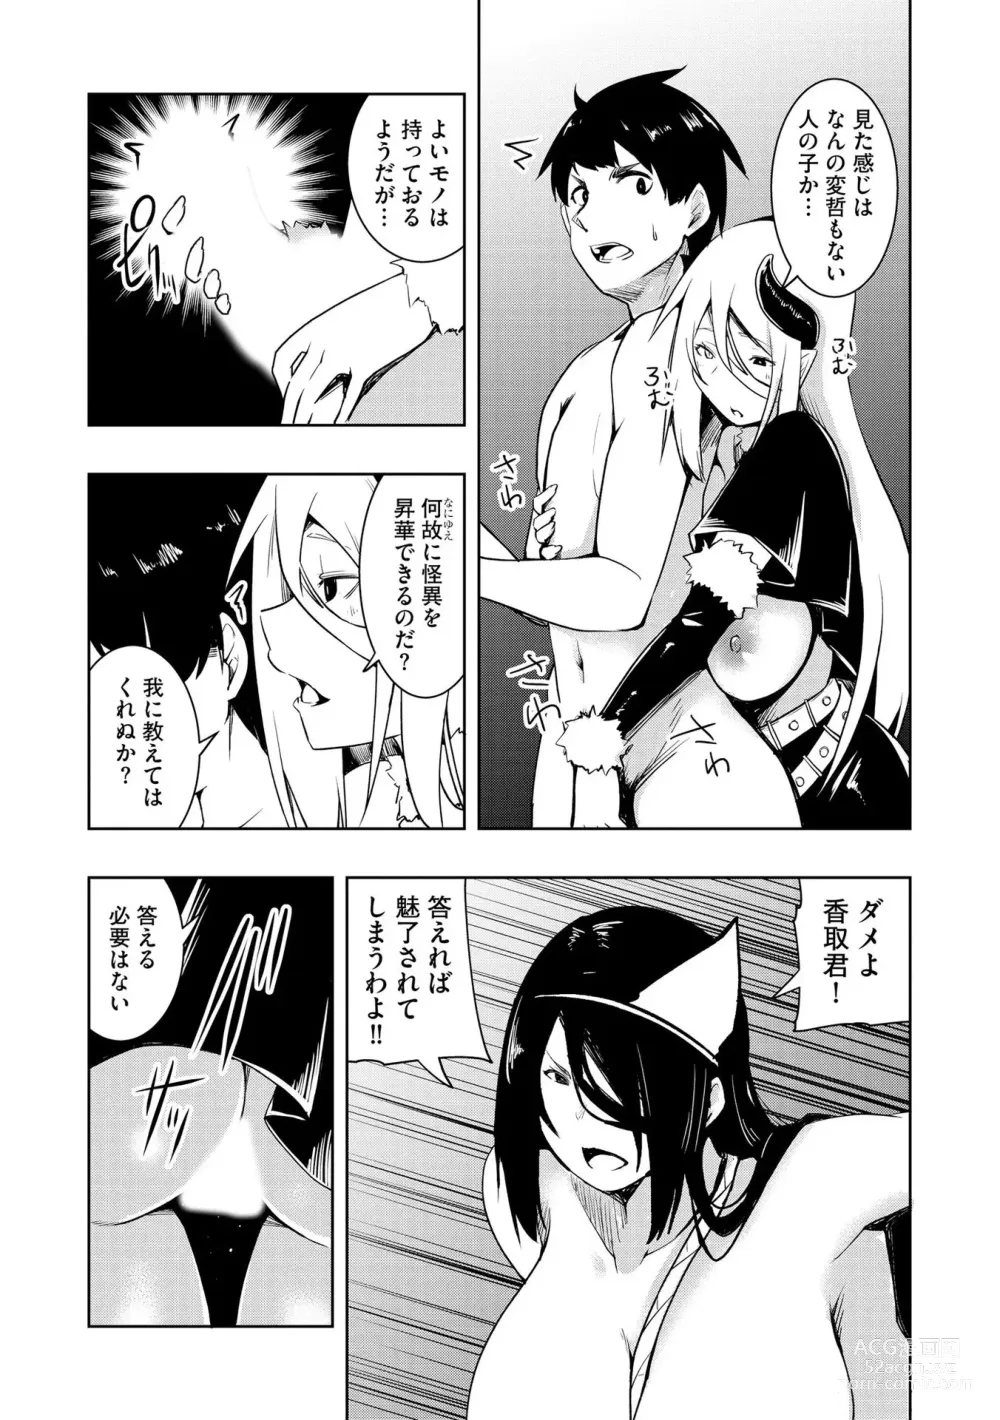 Page 176 of manga Kai-In Hontou wa Yarashii Toshi Densetsu